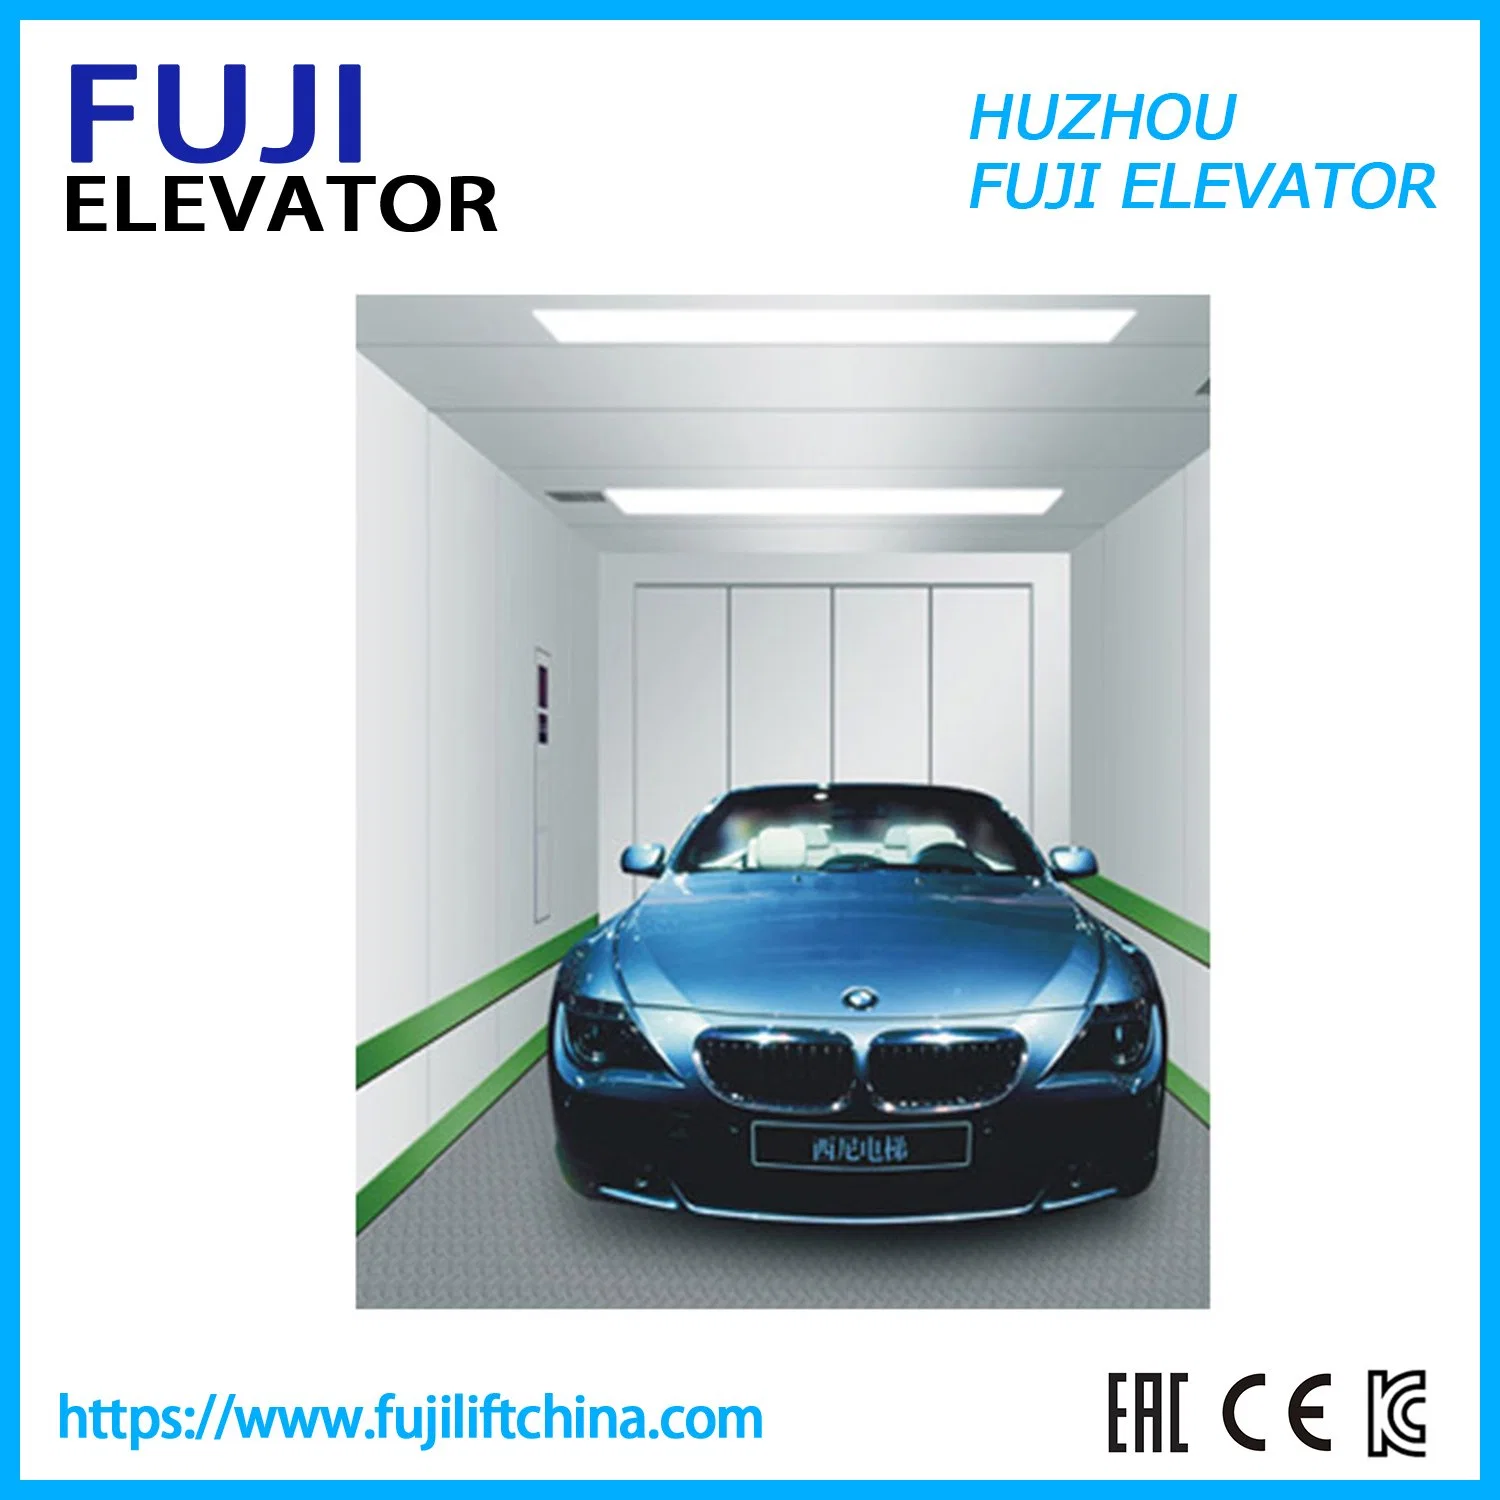 A FUJI carro elevador de frete de elevação do carro elevador mercadorias elevador com bom preço da China Controle Vvvf Fabricante de fábrica